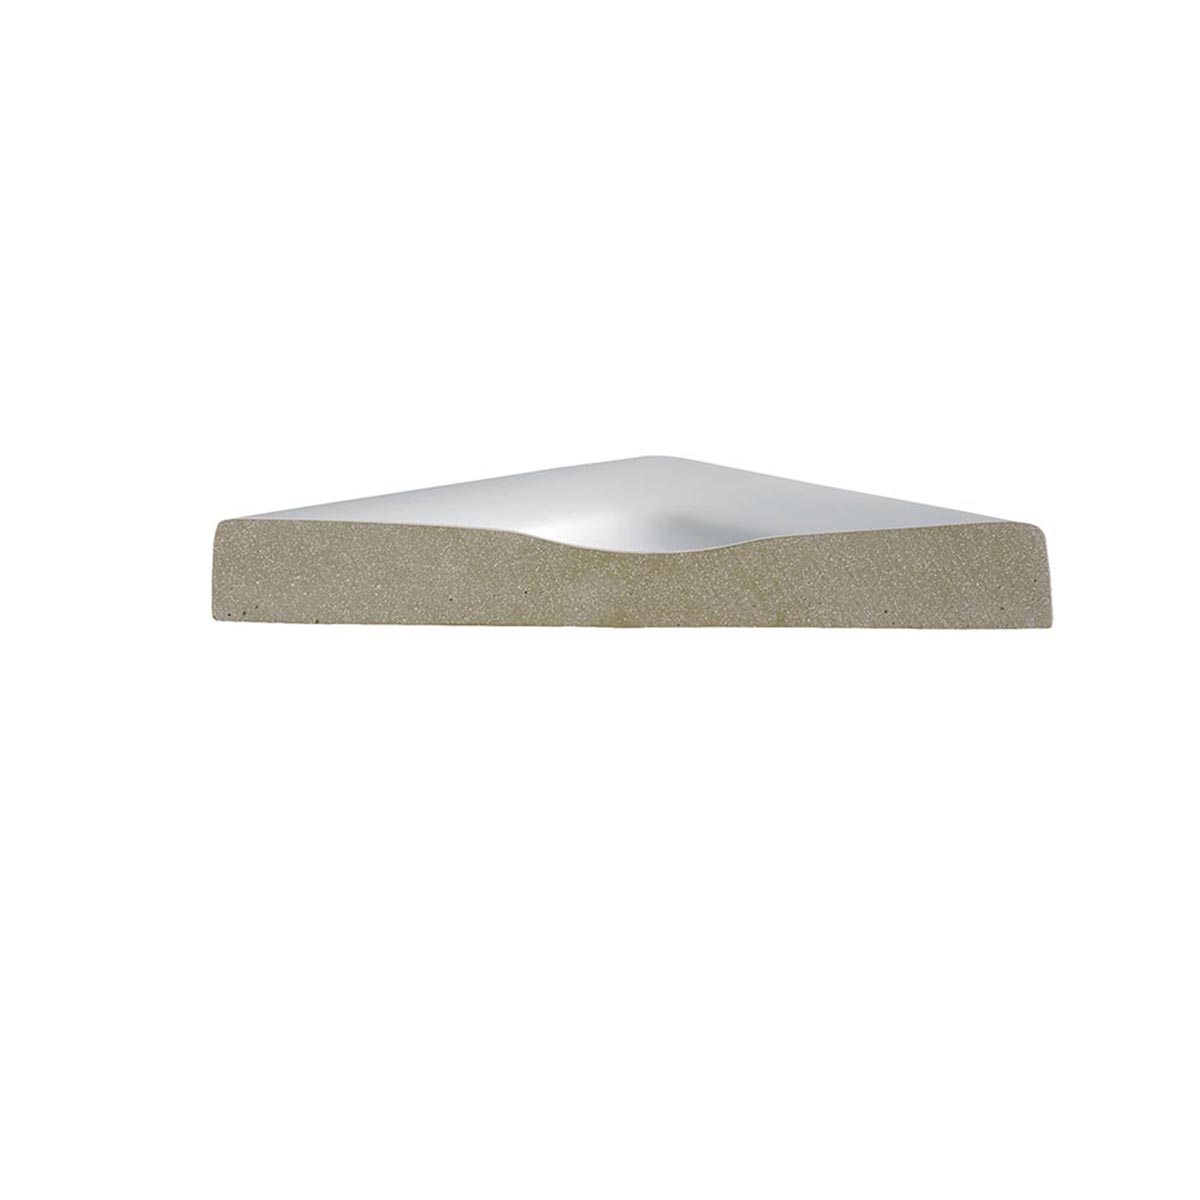 HSK Marmor-Polymer Quadrat Duschwanne superflach-Weiß-100 x 100 cm-ohne AntiSlip-Beschichtung-ohne Aquaproof-Dichtset